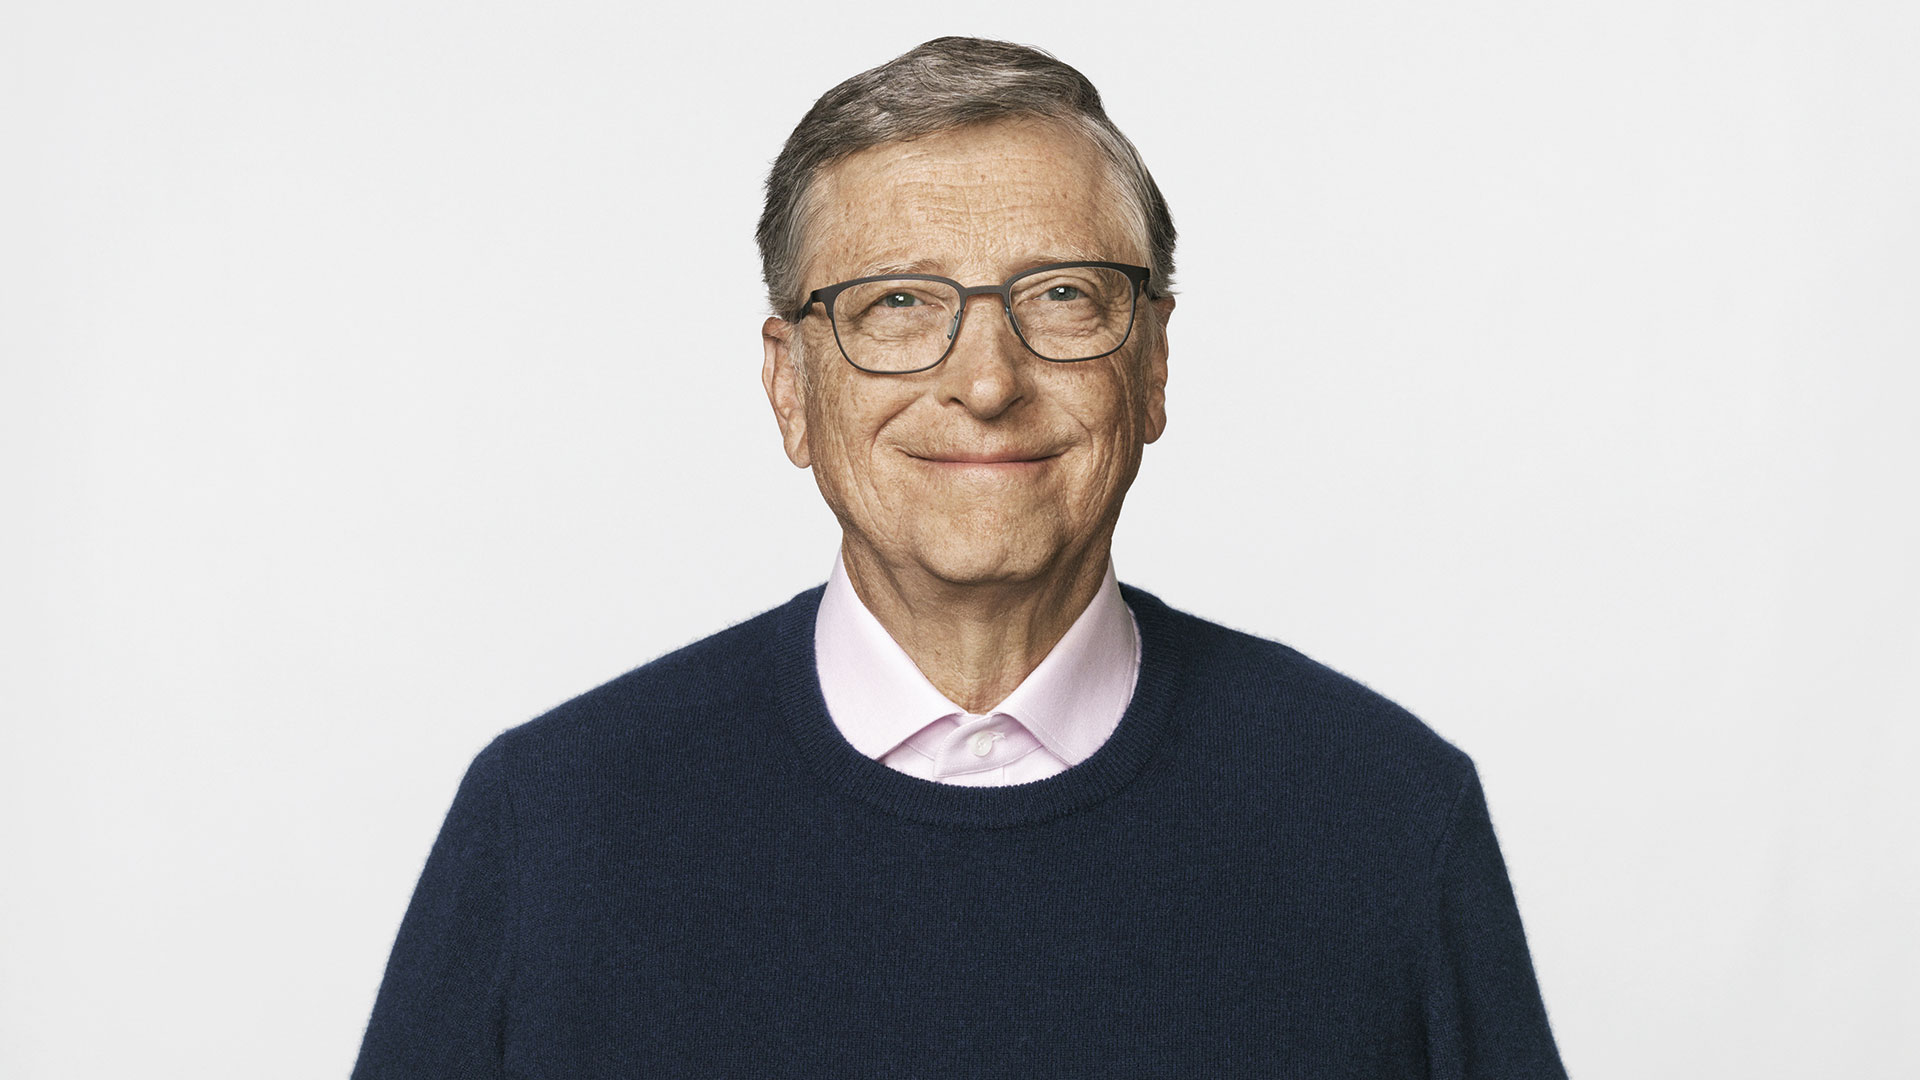 Las personas inteligentes deberían trabajar en empresas que se sumen a causas ambientales según Bill Gates
(John Keatley)